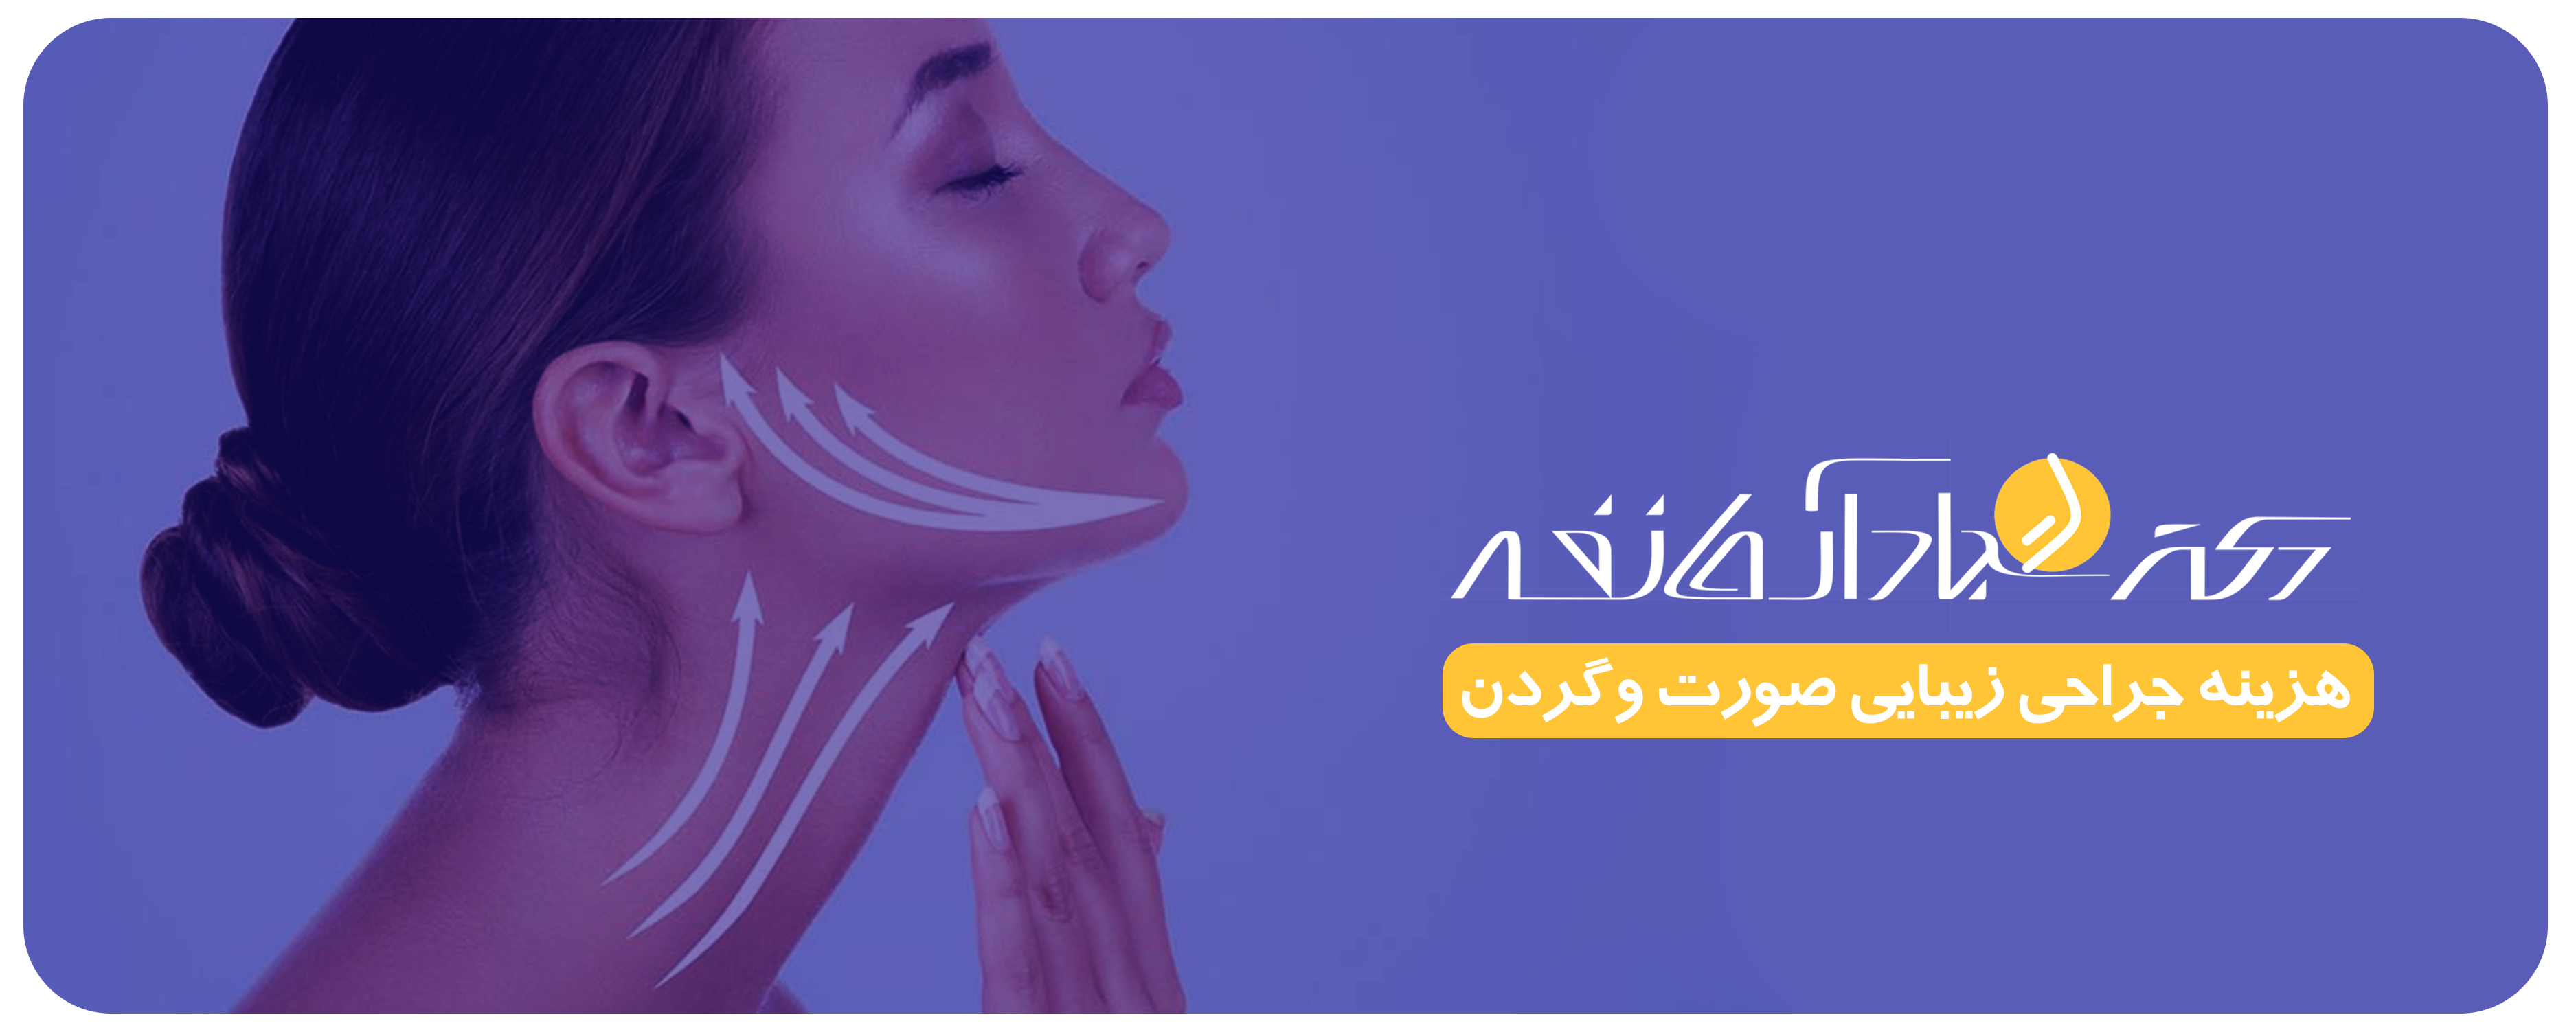 جراحی زیبایی صورت و گردن در اصفهان - کلینیک دکتر آرمان فر